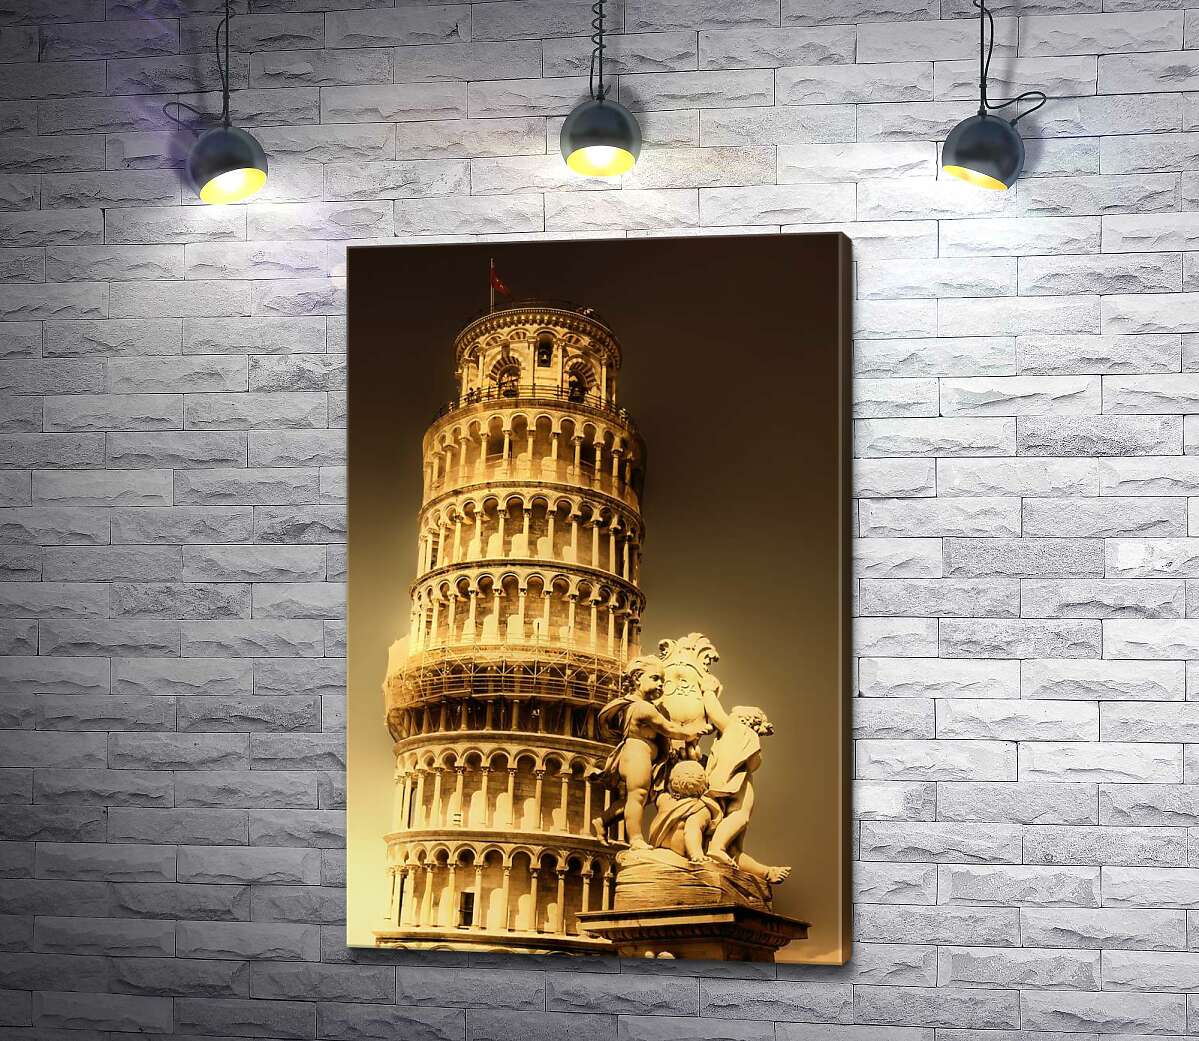 картина Пізанська вежа (Pisa tower) видніється через фонтан Путті (Fontana dei Putti)